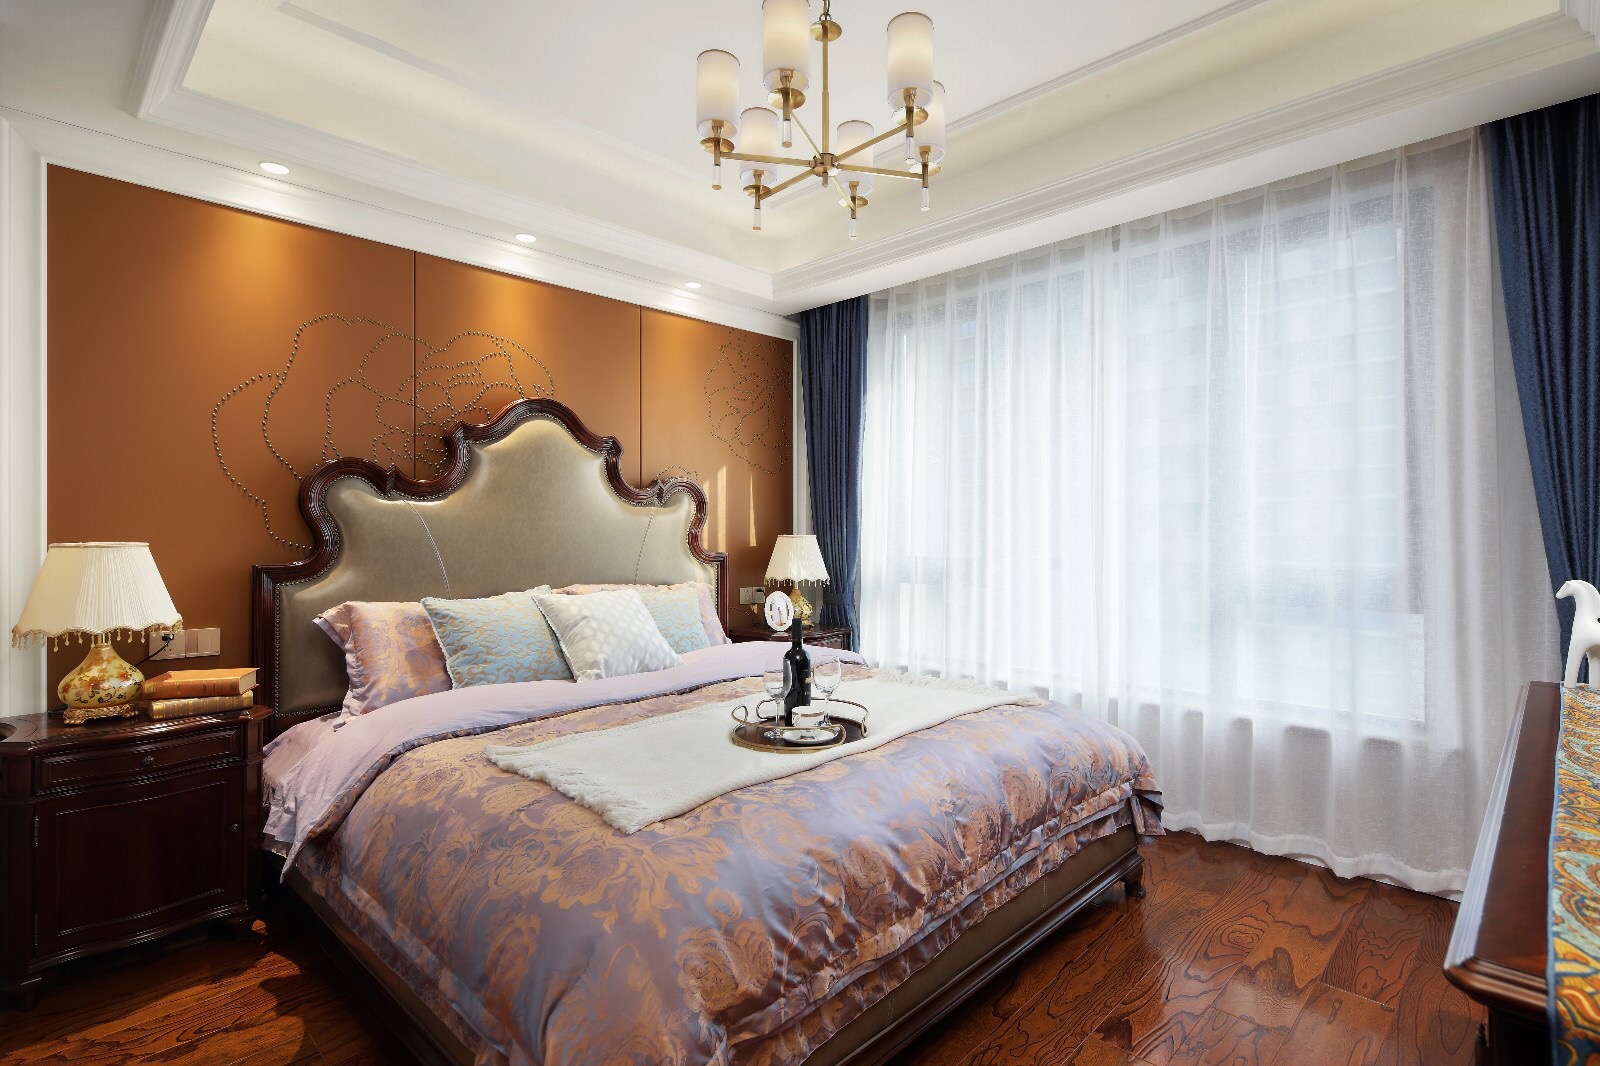 主卧橘色背景墙使空间多了一抹柔情蜜意，优雅大气的床头设计，温柔与惬意感油然而生。